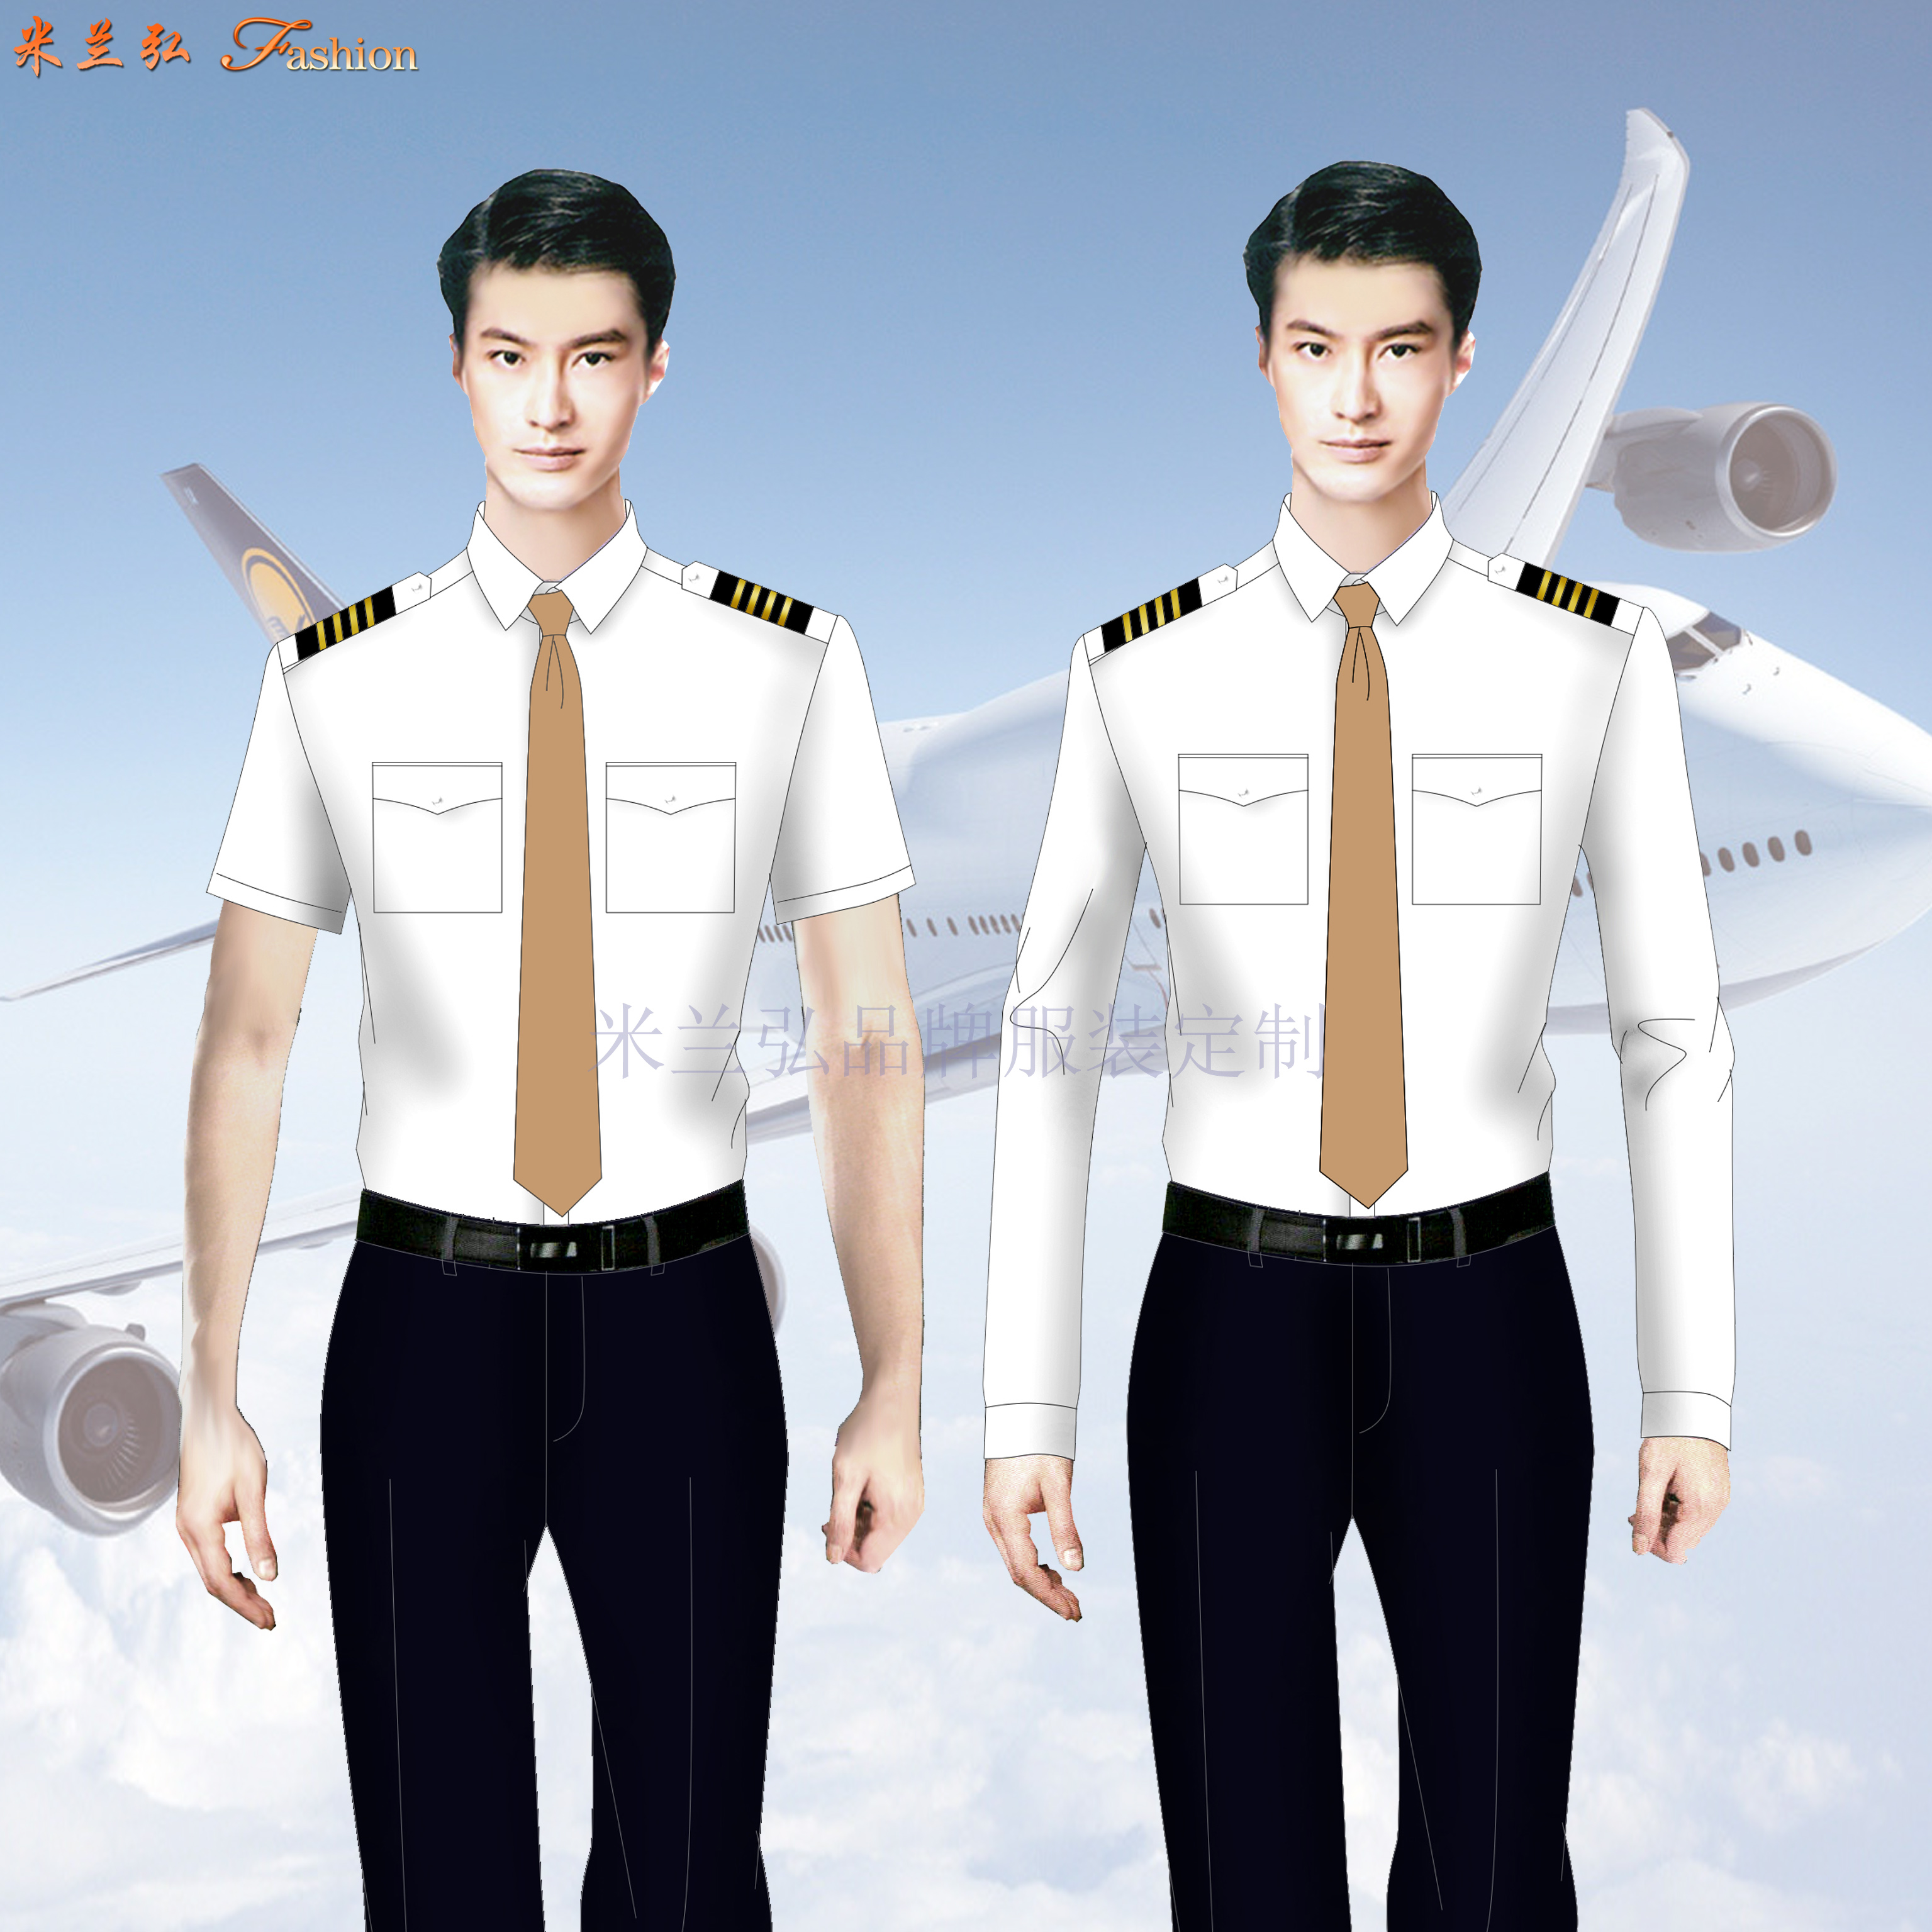 上海虹桥国际机场空勤男女工作制服定做-米兰弘服装厂家-3